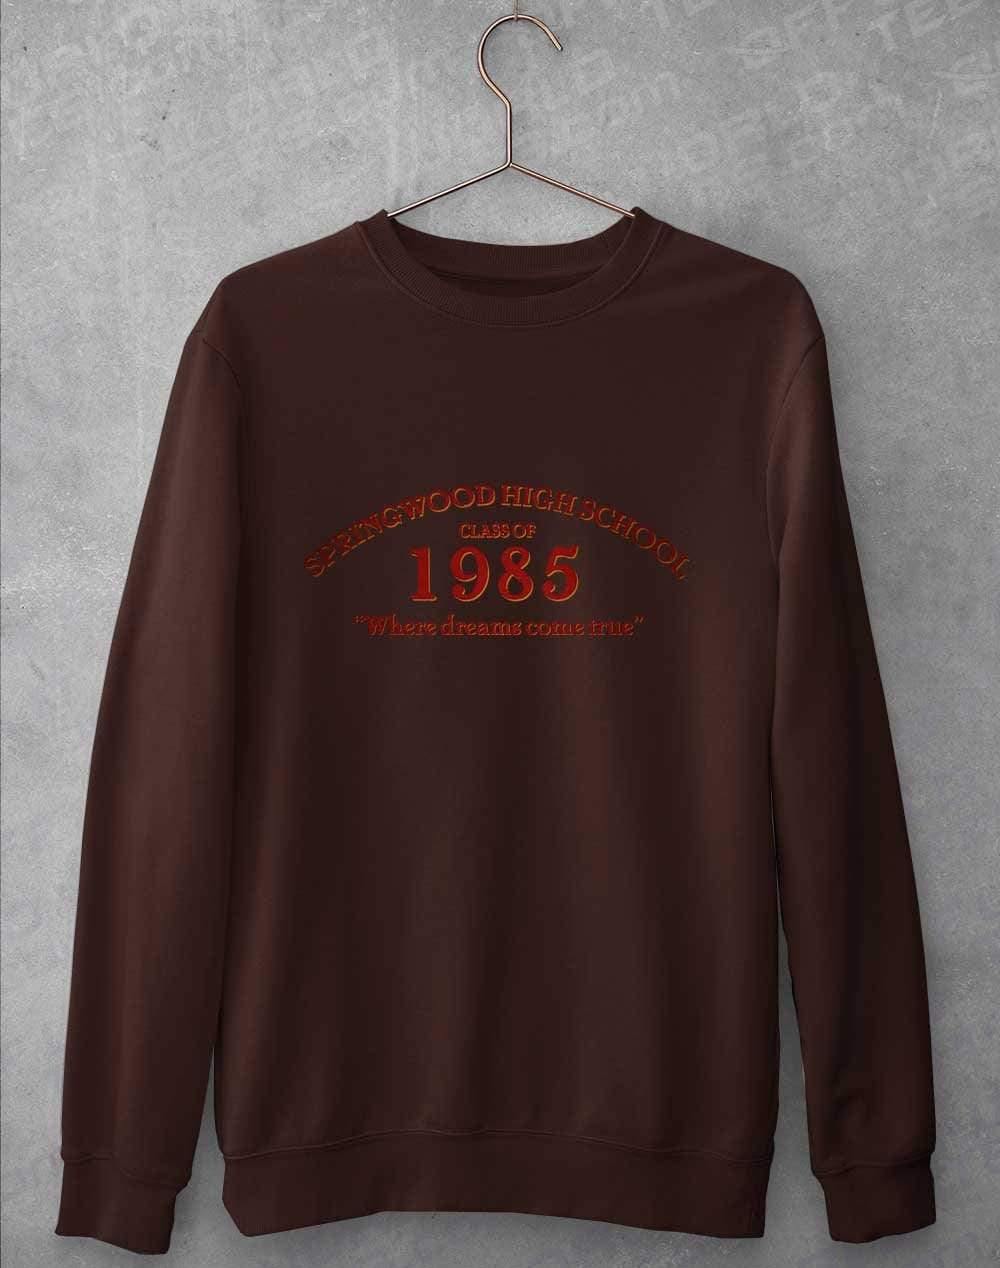 Springwood High School Sweatshirt S / Hot Chocolate  - Off World Tees